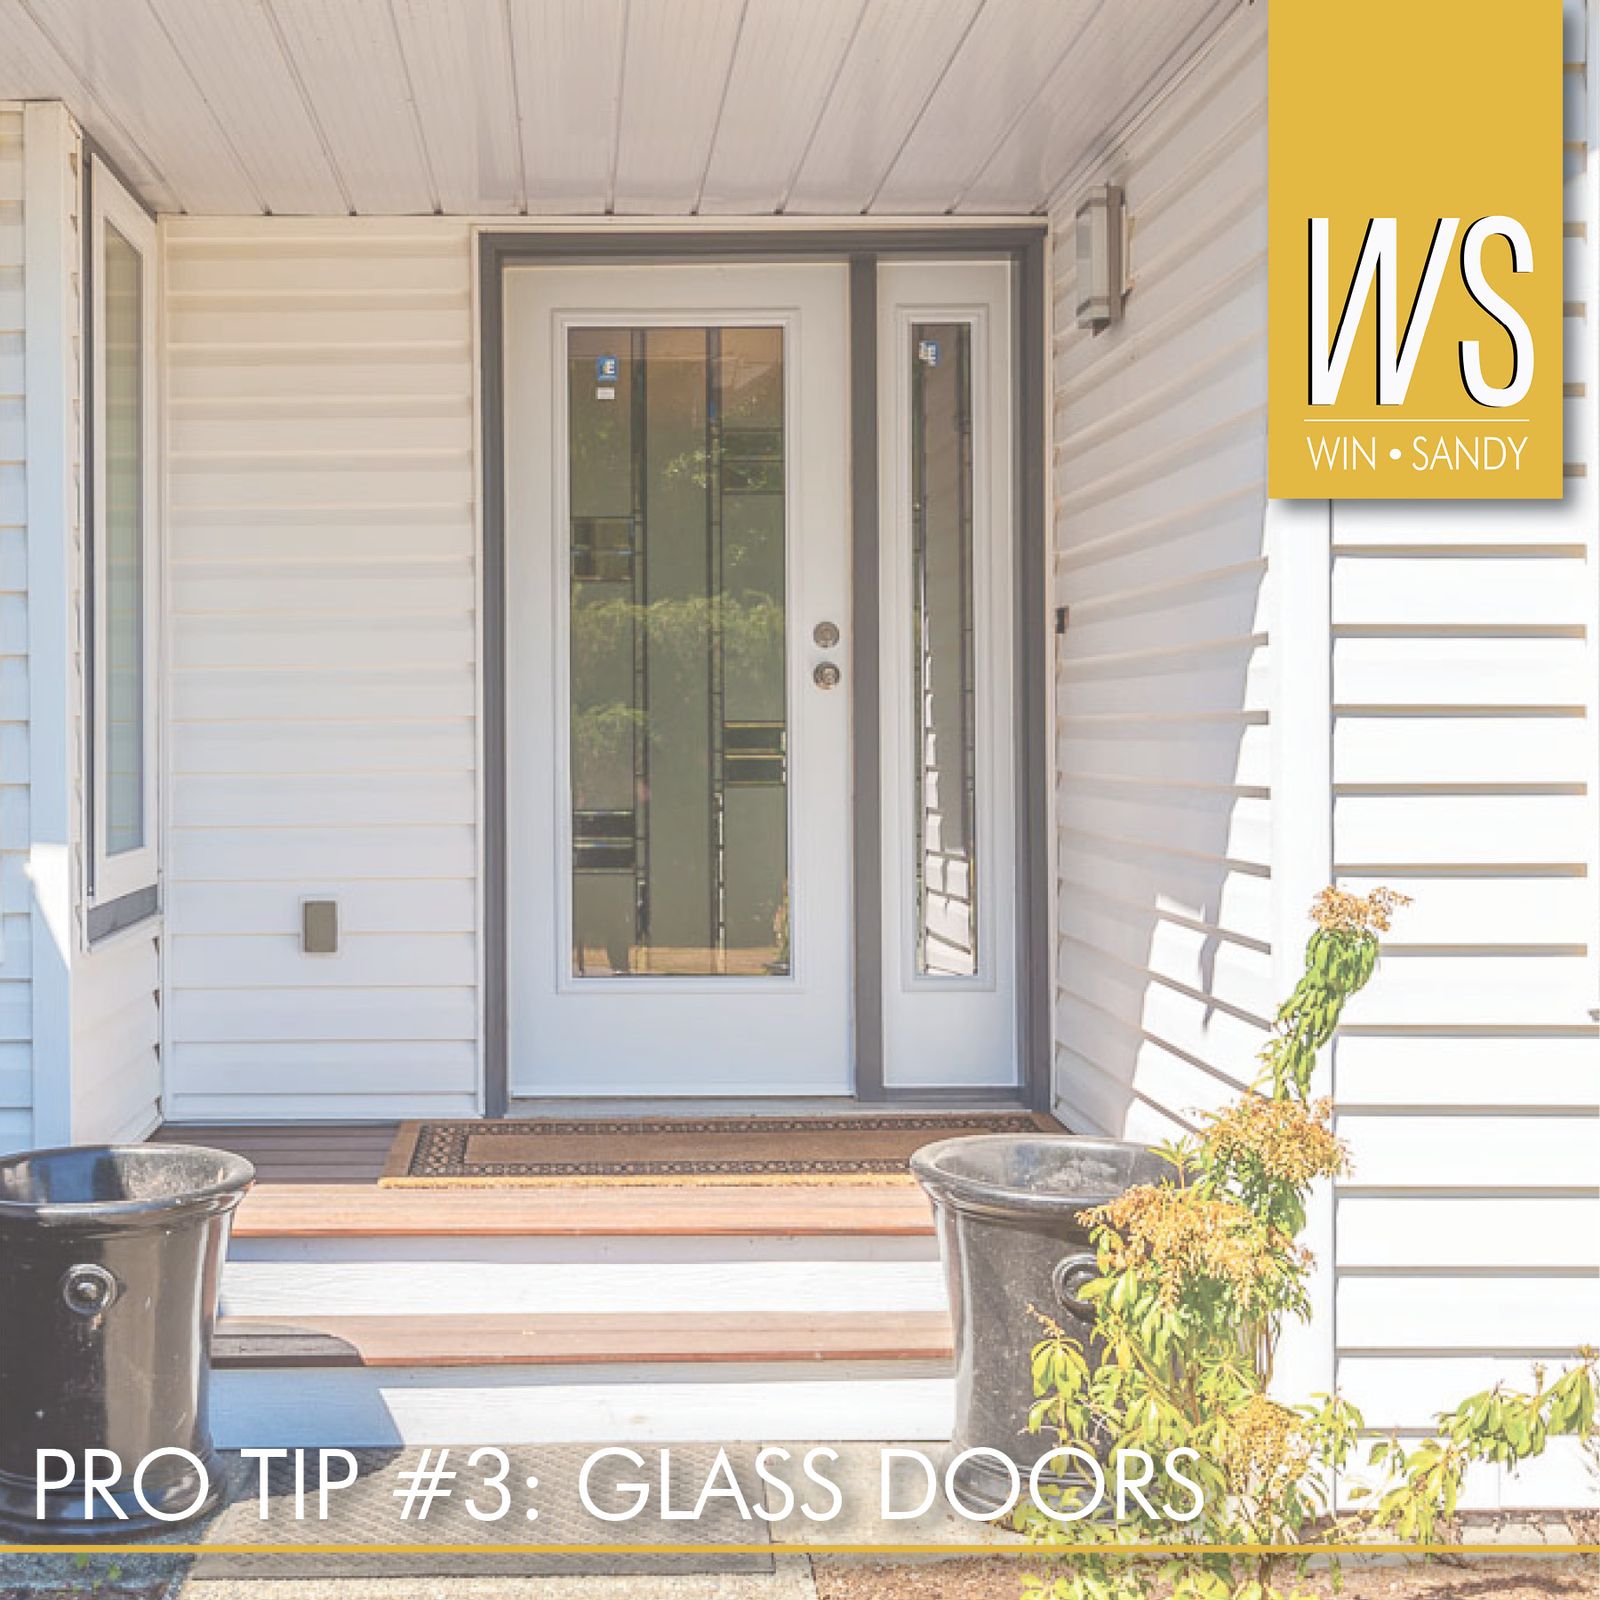 Renovation Pro Tip #3: Glass Doors